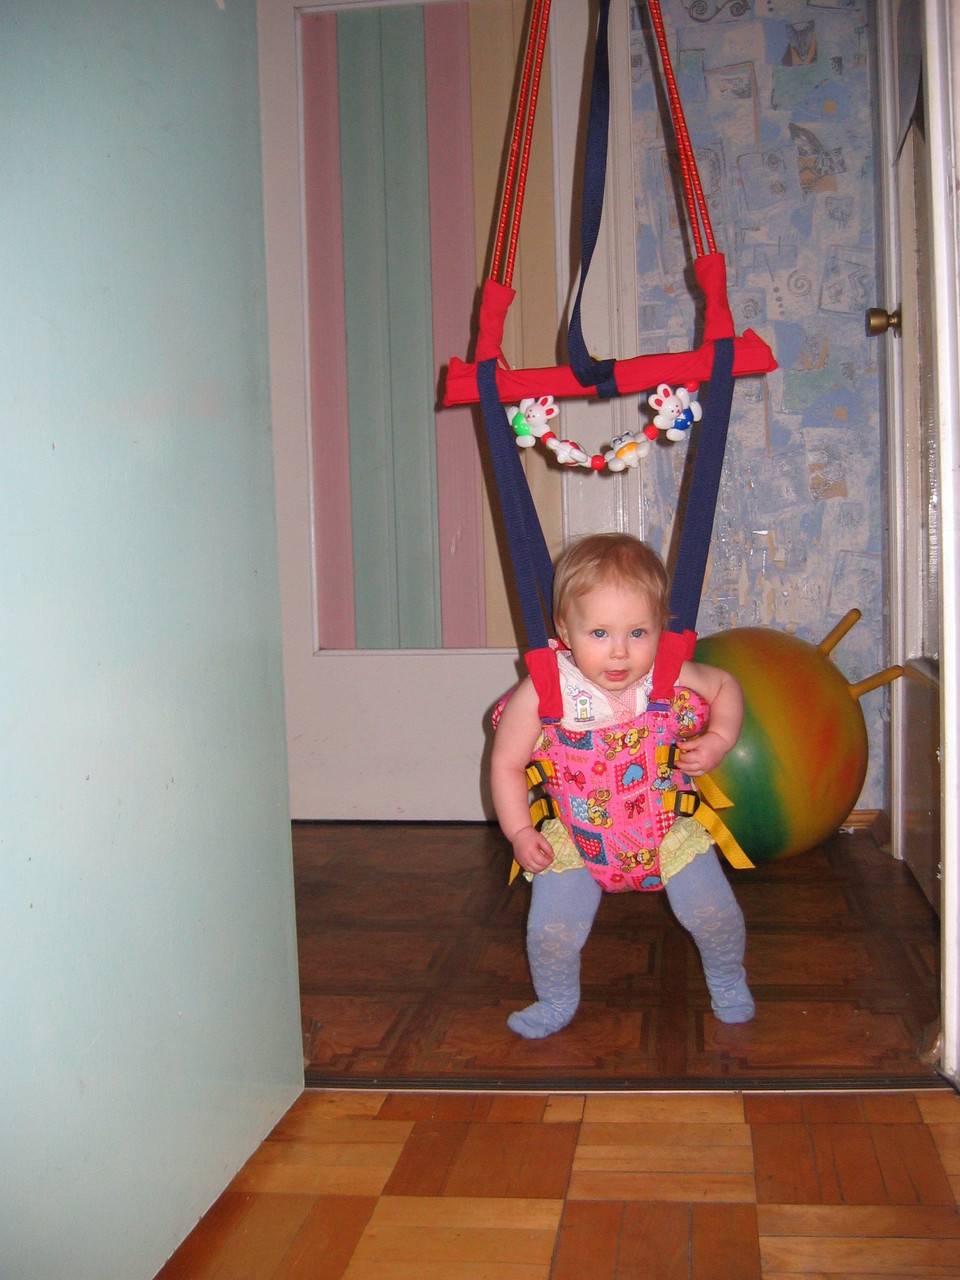 Прыгунки для детей: правила использования и обзор моделей